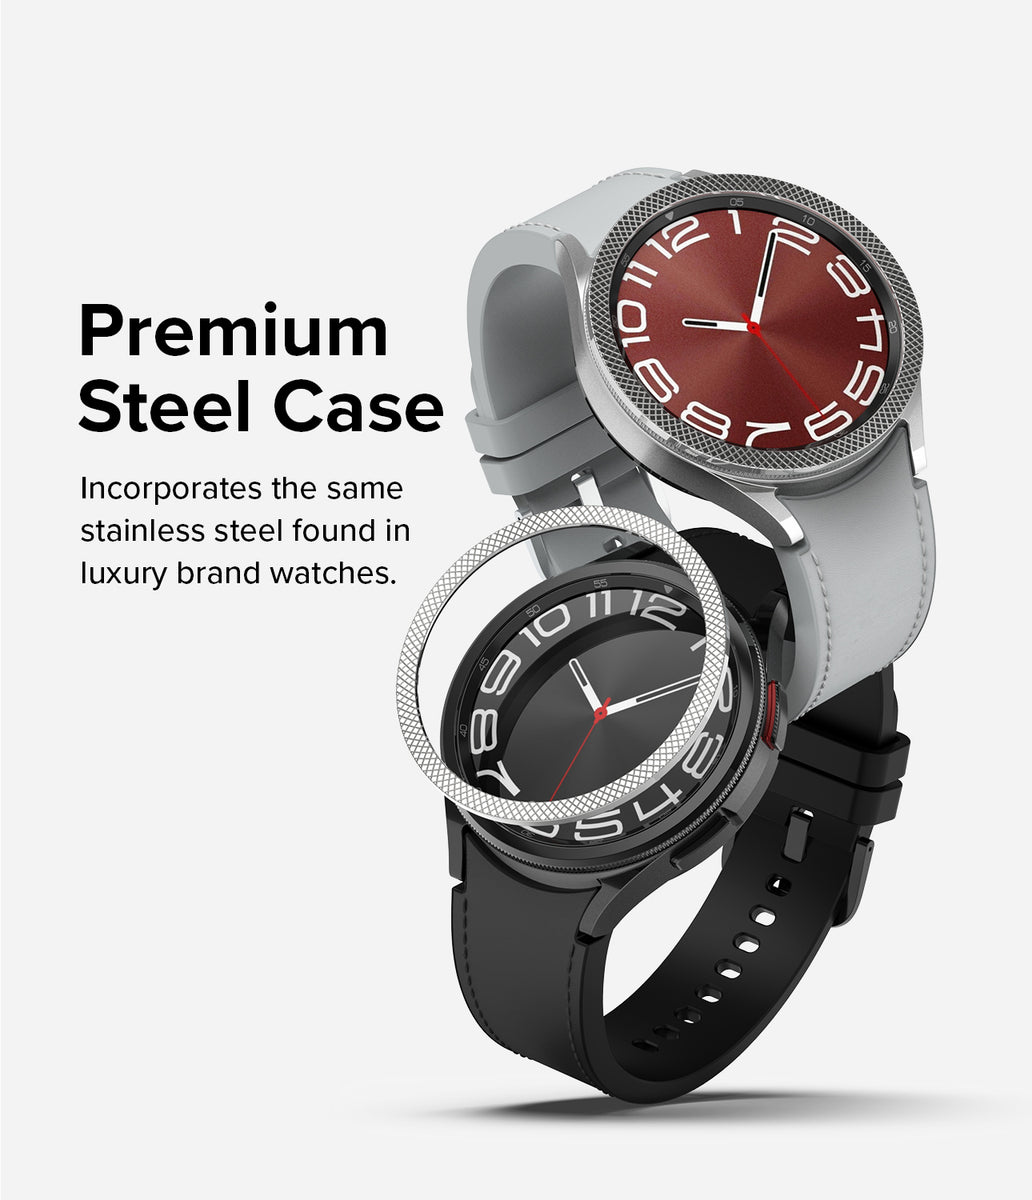 Ringke Bezel Styling  Galaxy Watch 6 [40mm] - 04 Silver – Ringke Official  Store